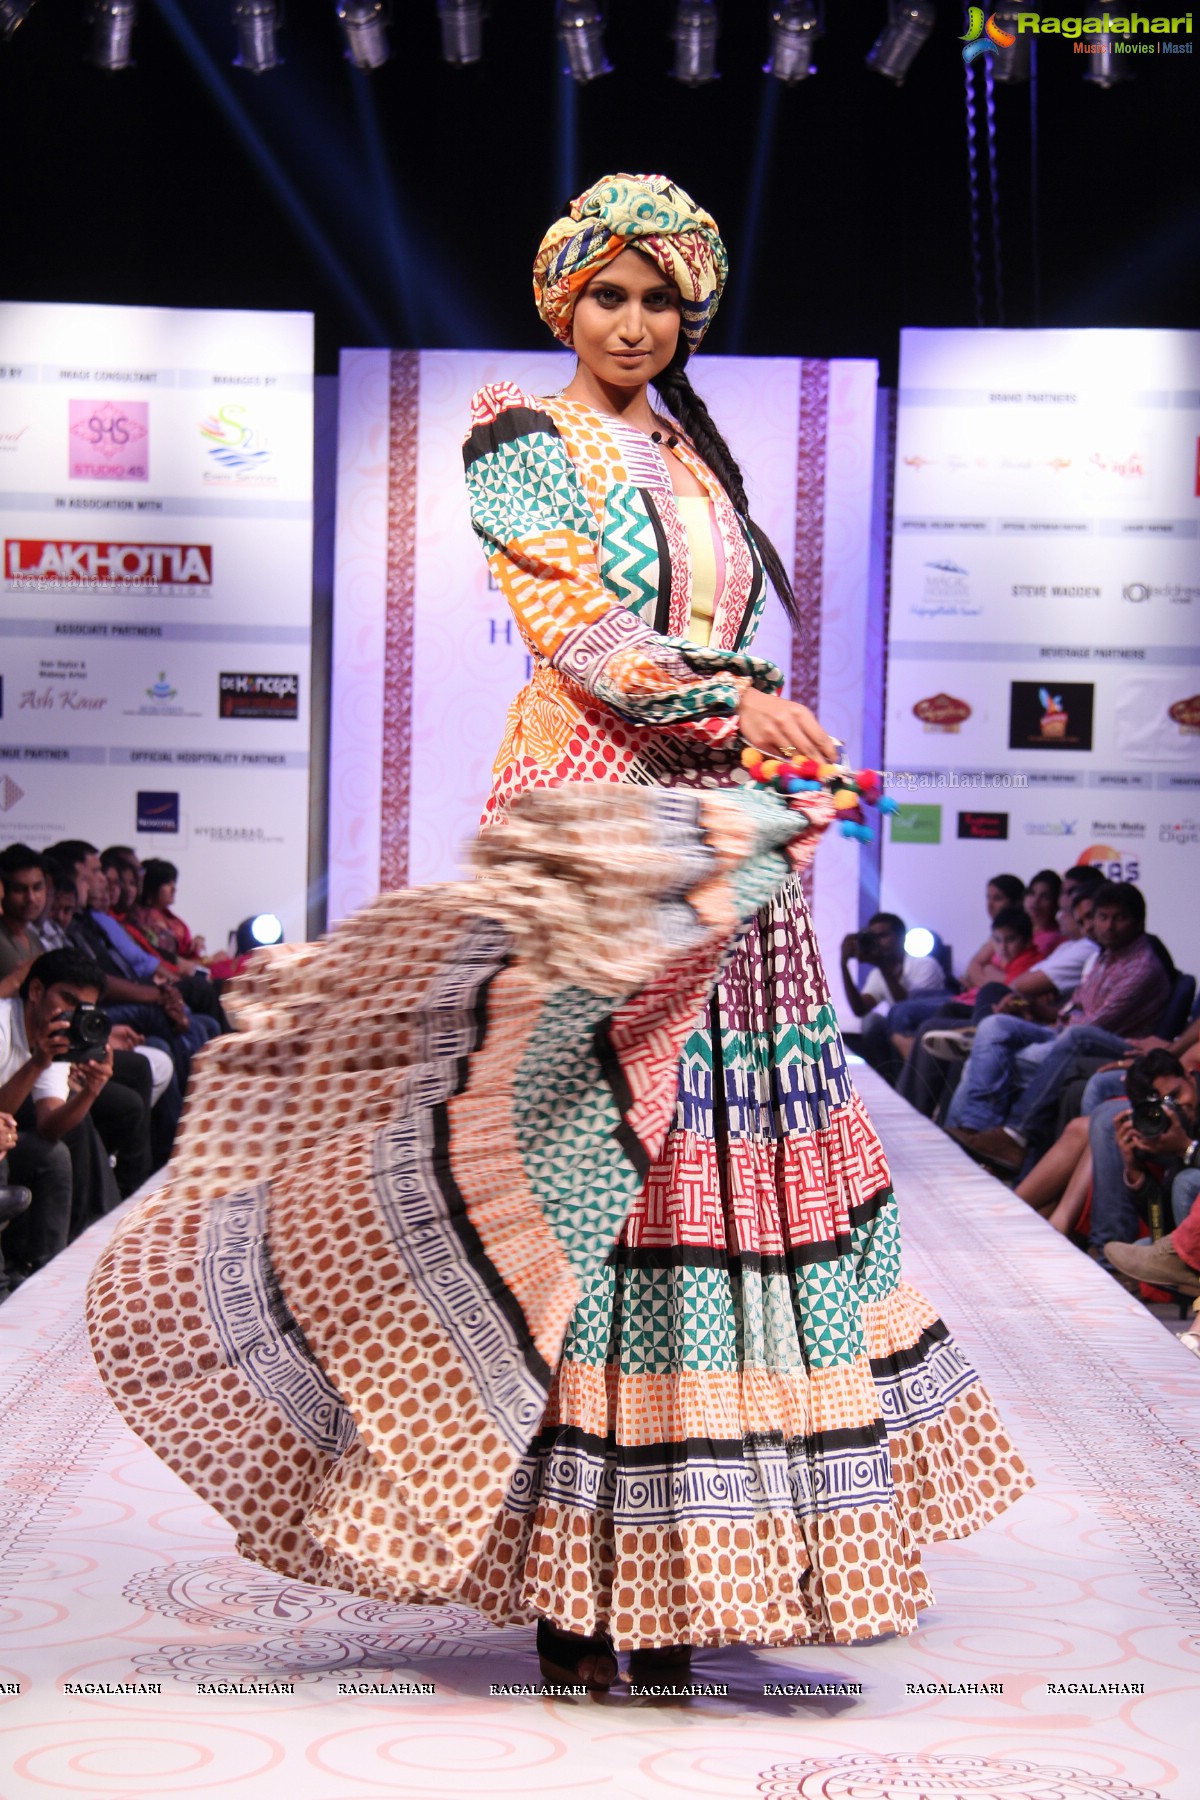 Hyderabad Fashion Week-2013, Season 3 (Day 3)